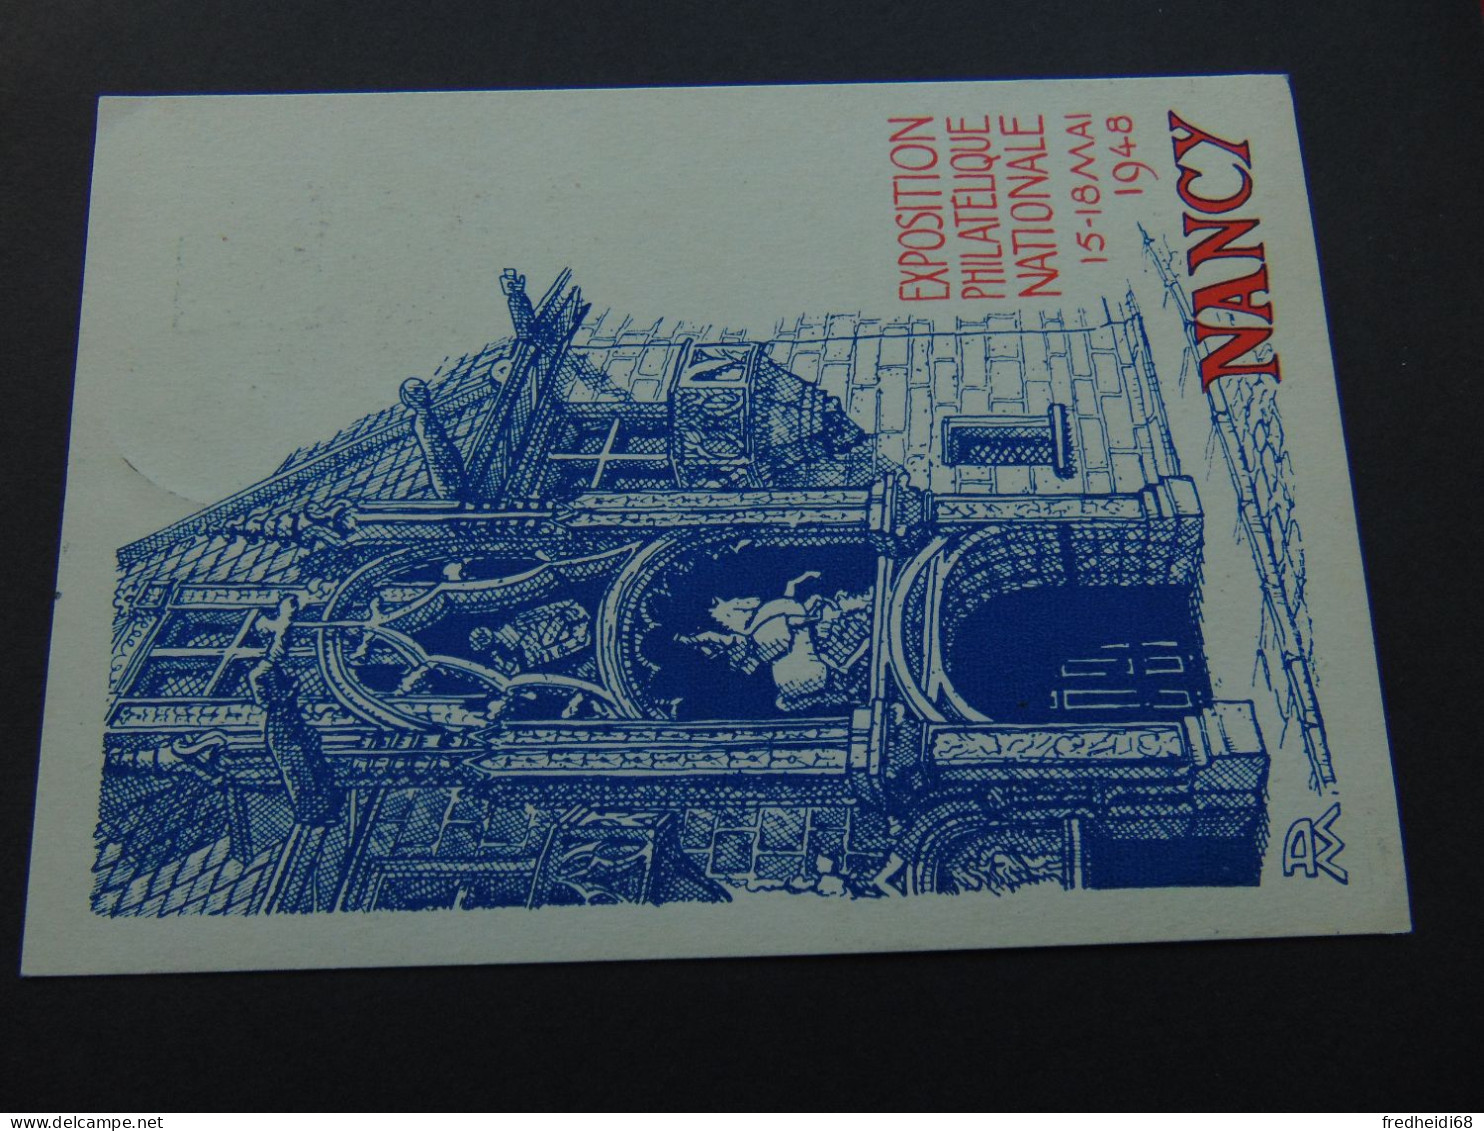 Carte Postale Au Type Marianne De Gandon à 3,00 Francs N°. D1a (Storch) Oblitérée Expo Philatélique De Nancy - Postales Tipos Y (antes De 1995)